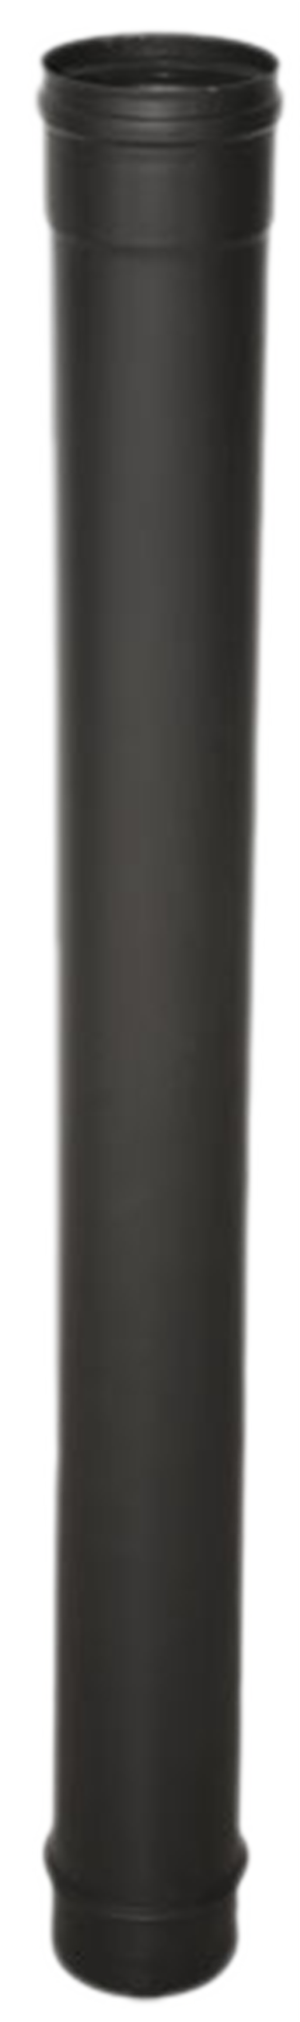 Wolfpack Tubo de Estufa Pellet Acero Vitrificado Negro Ø 80 mm. Longitud  100 cm. Estufas de Leña, Chimenea, Alta resistencia, W